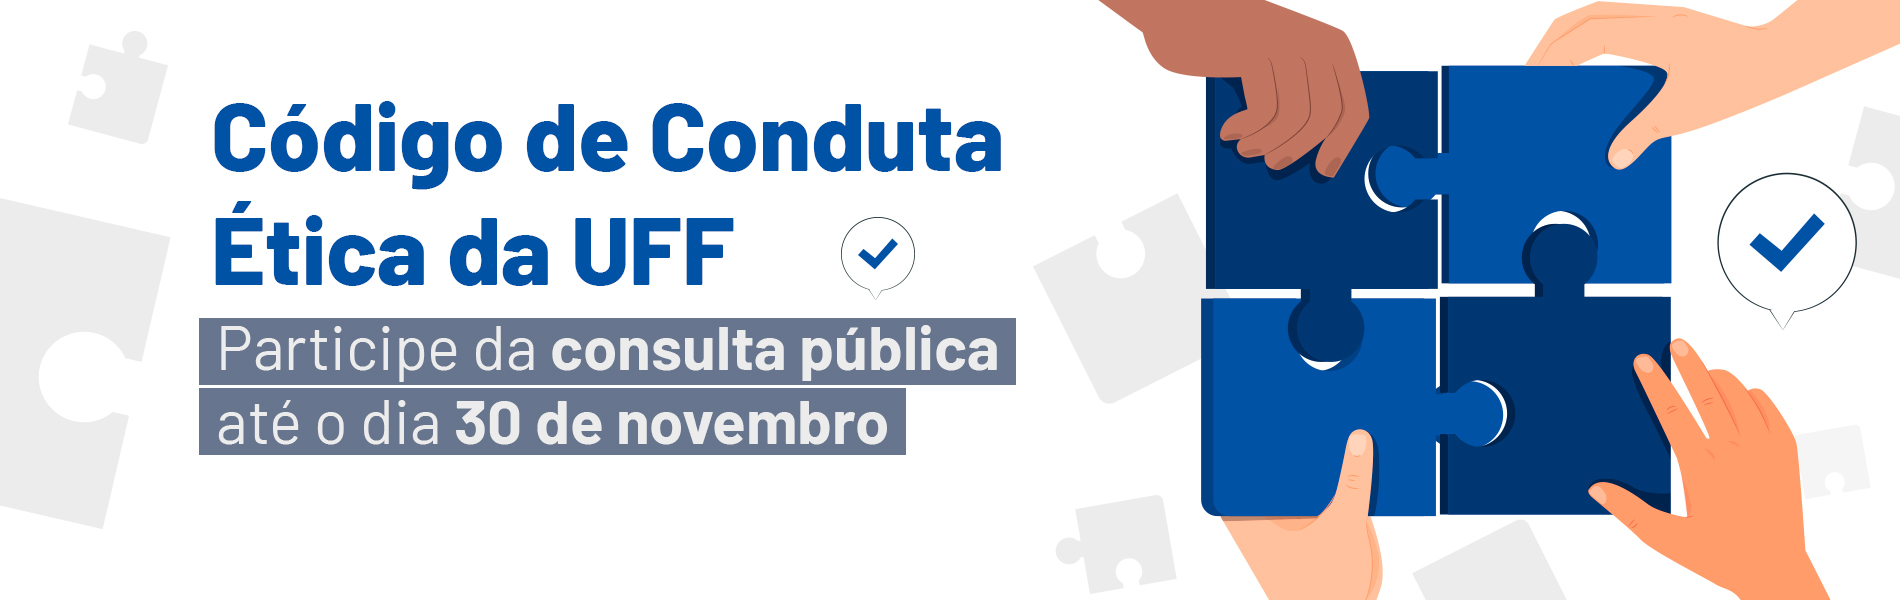 Banner sobre a consulta pública ao código de conduta da UFF. Ilustração de 4 mãos montando um quebra cabeça.